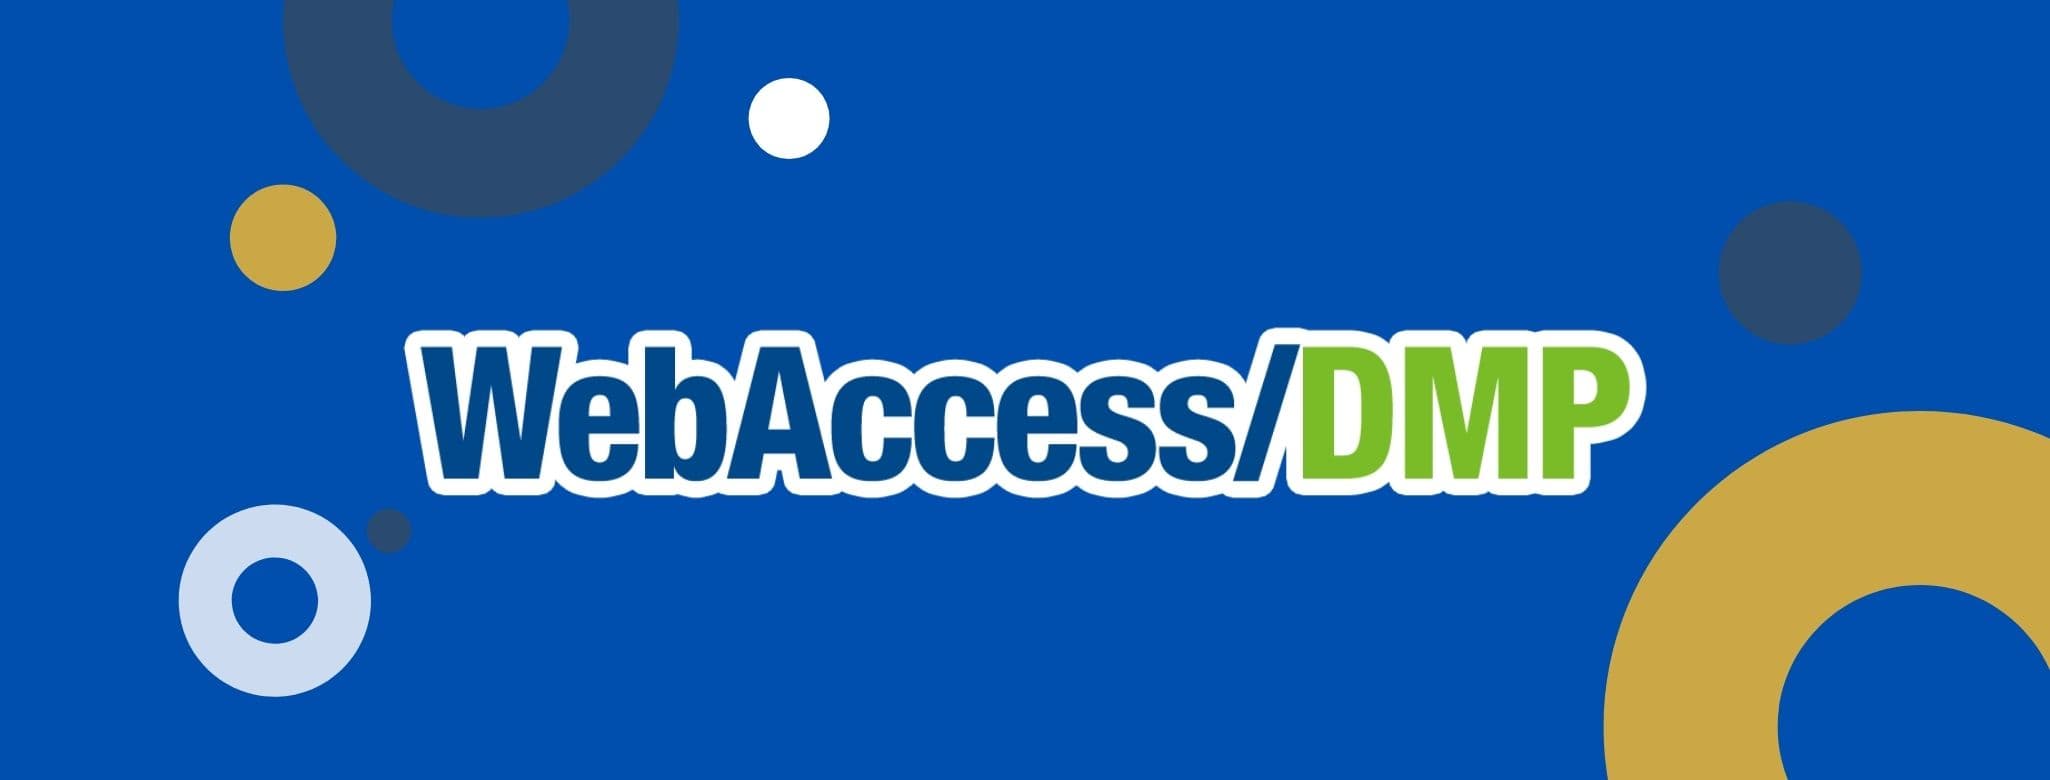 Logo de Webaccess/DMP